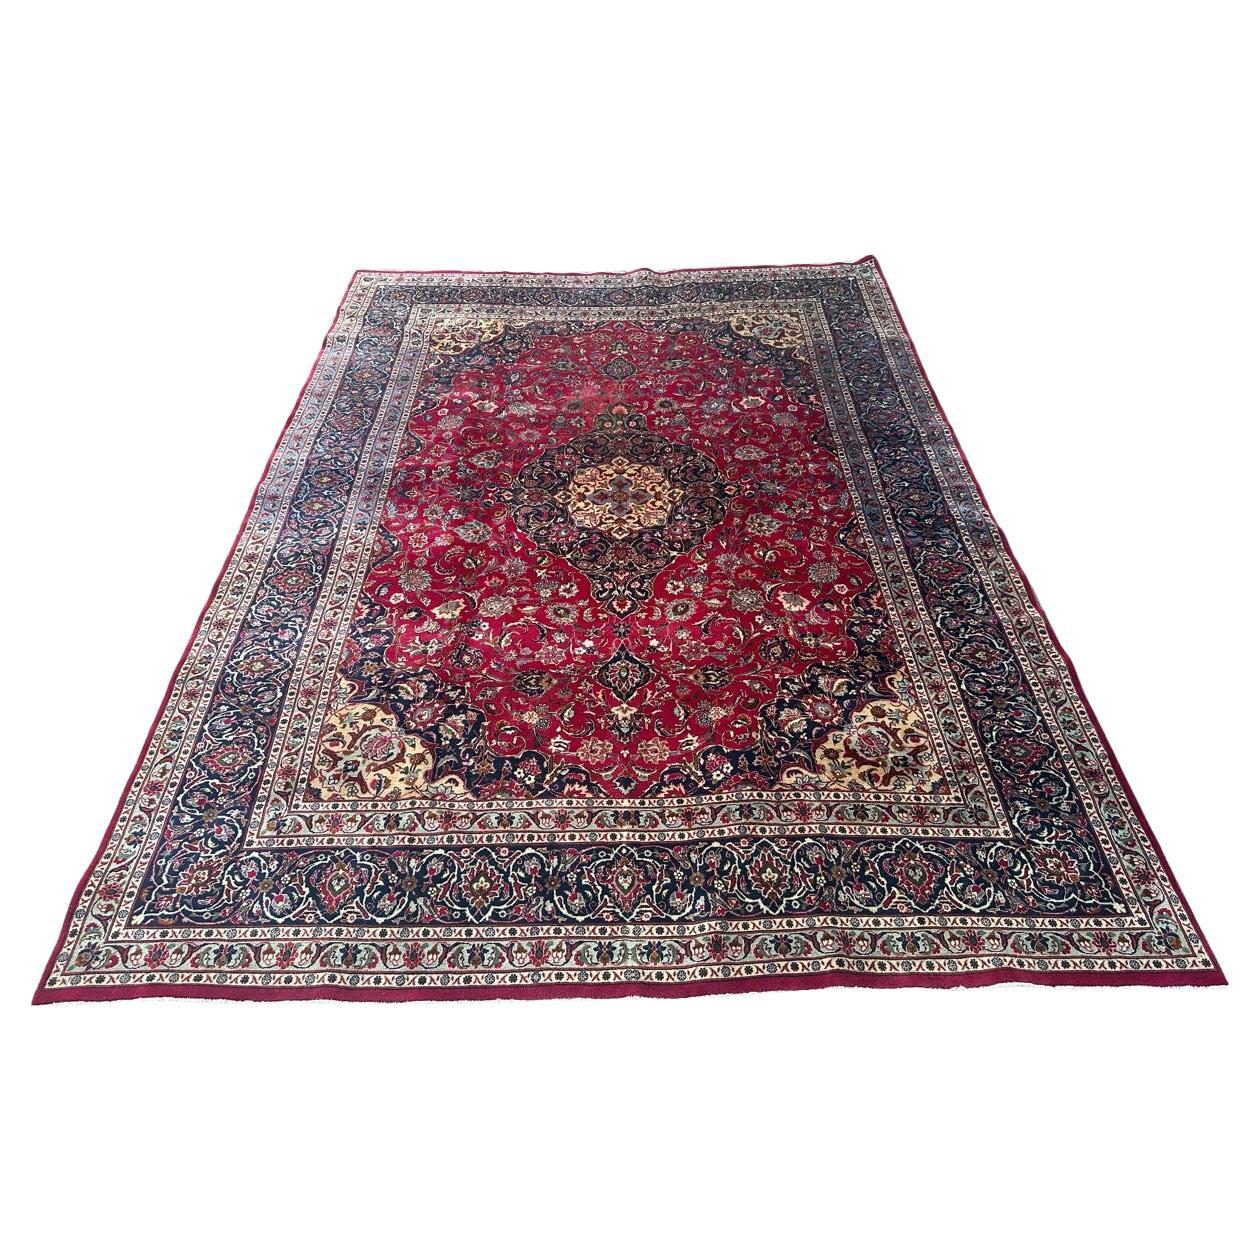 Bobyrug’s nice vintage large kashan rug For Sale